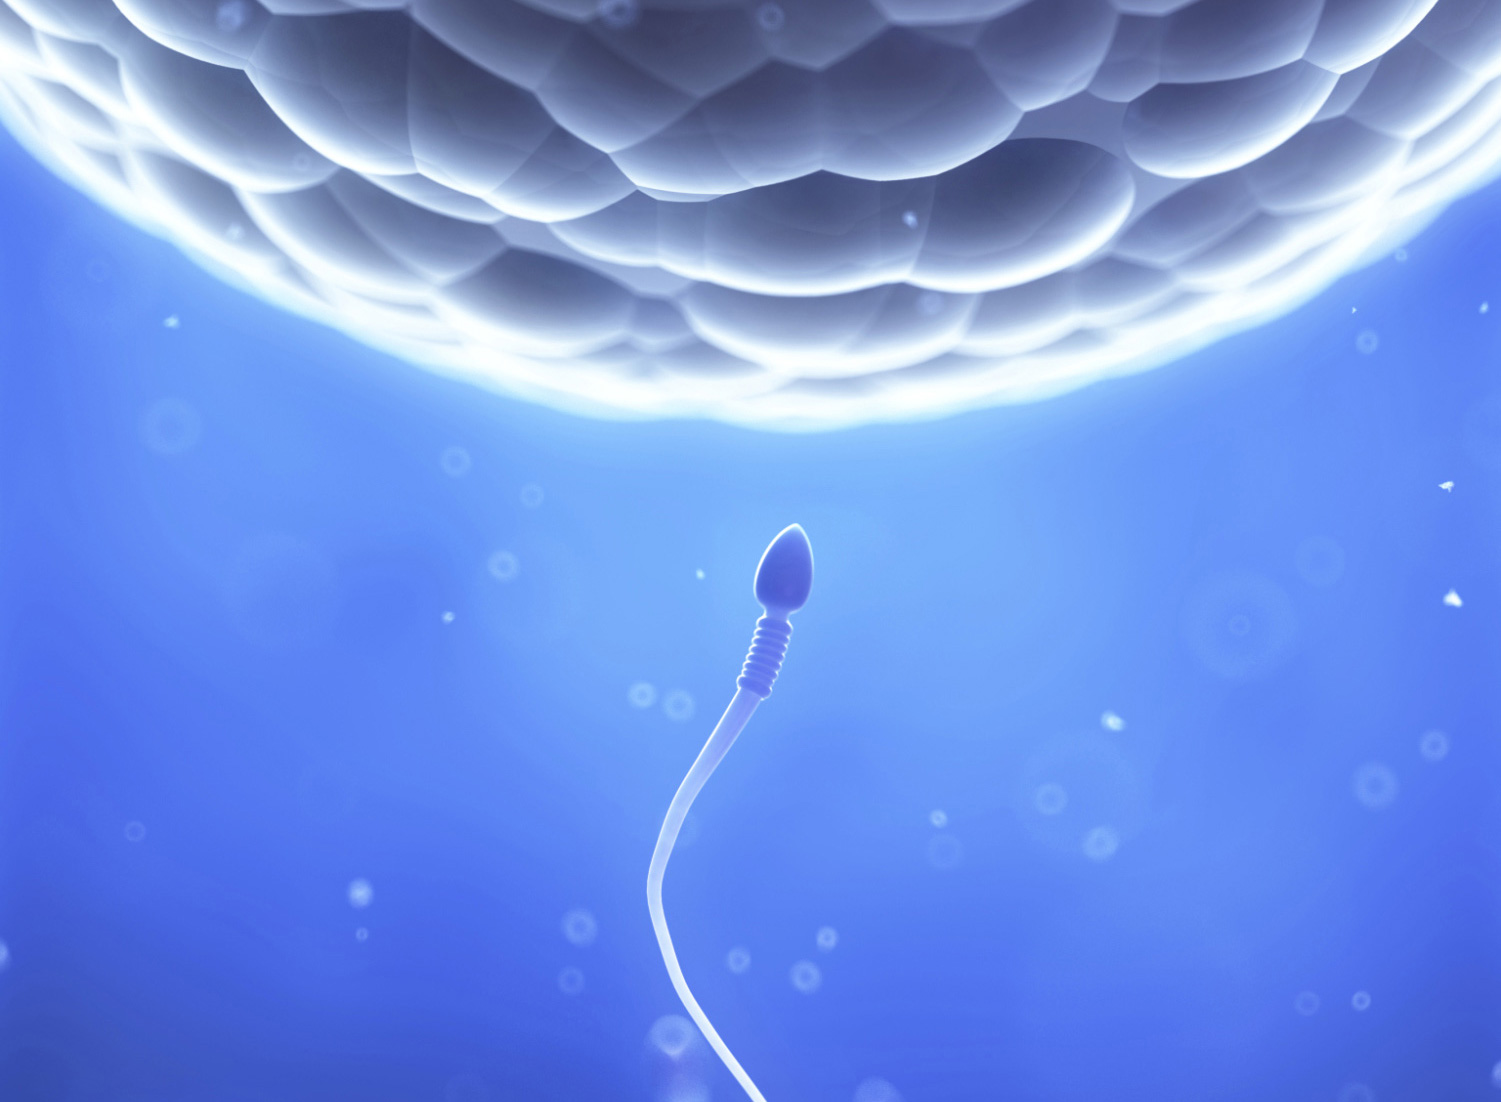 Sperm approaching an egg.